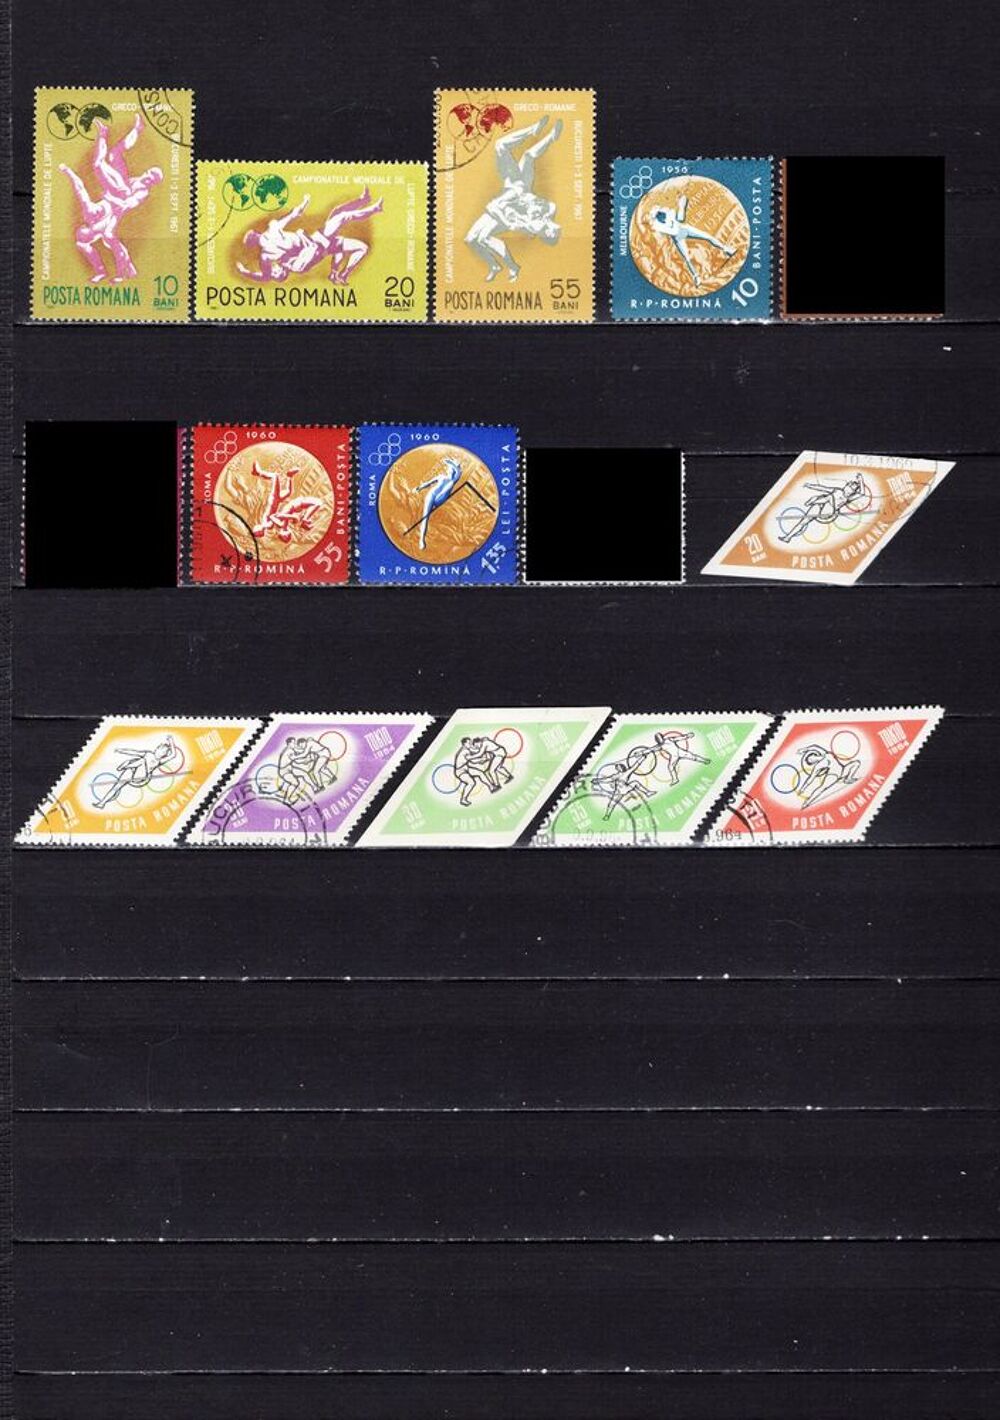 lot de 52 timbres de ROUMANIE sur les SPORTS 